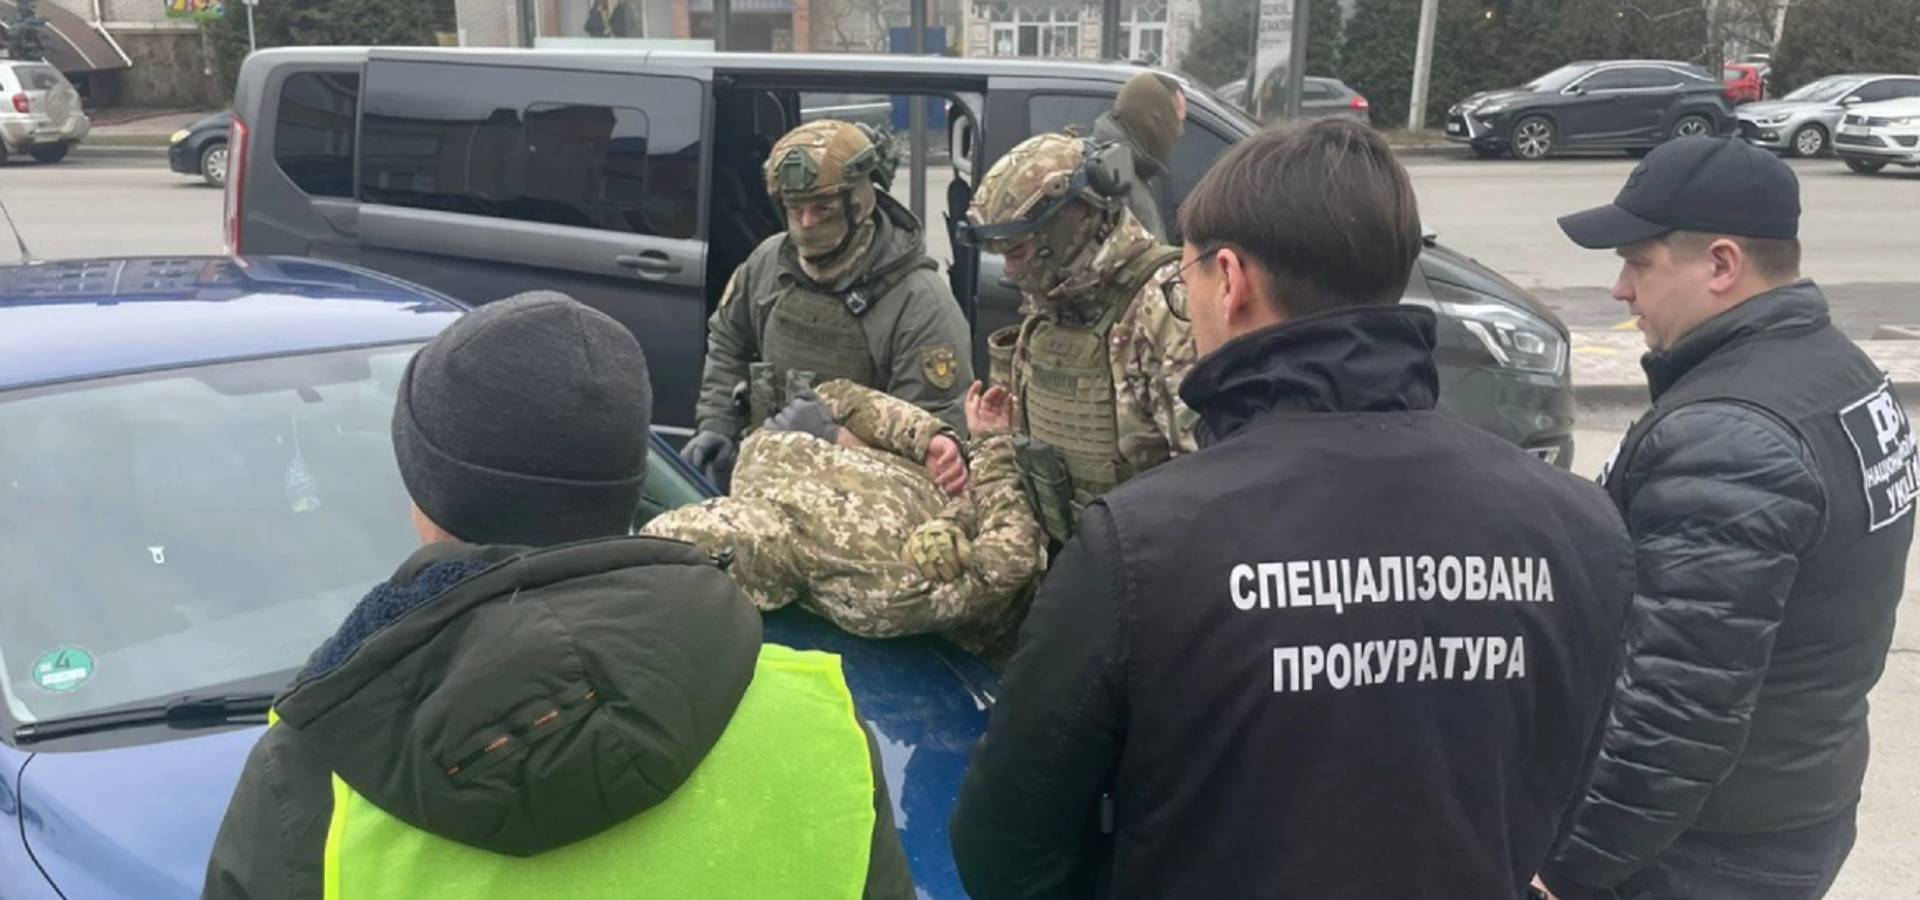 У Вінниці затримали військовослужбовця, який продавав цивільним гранати